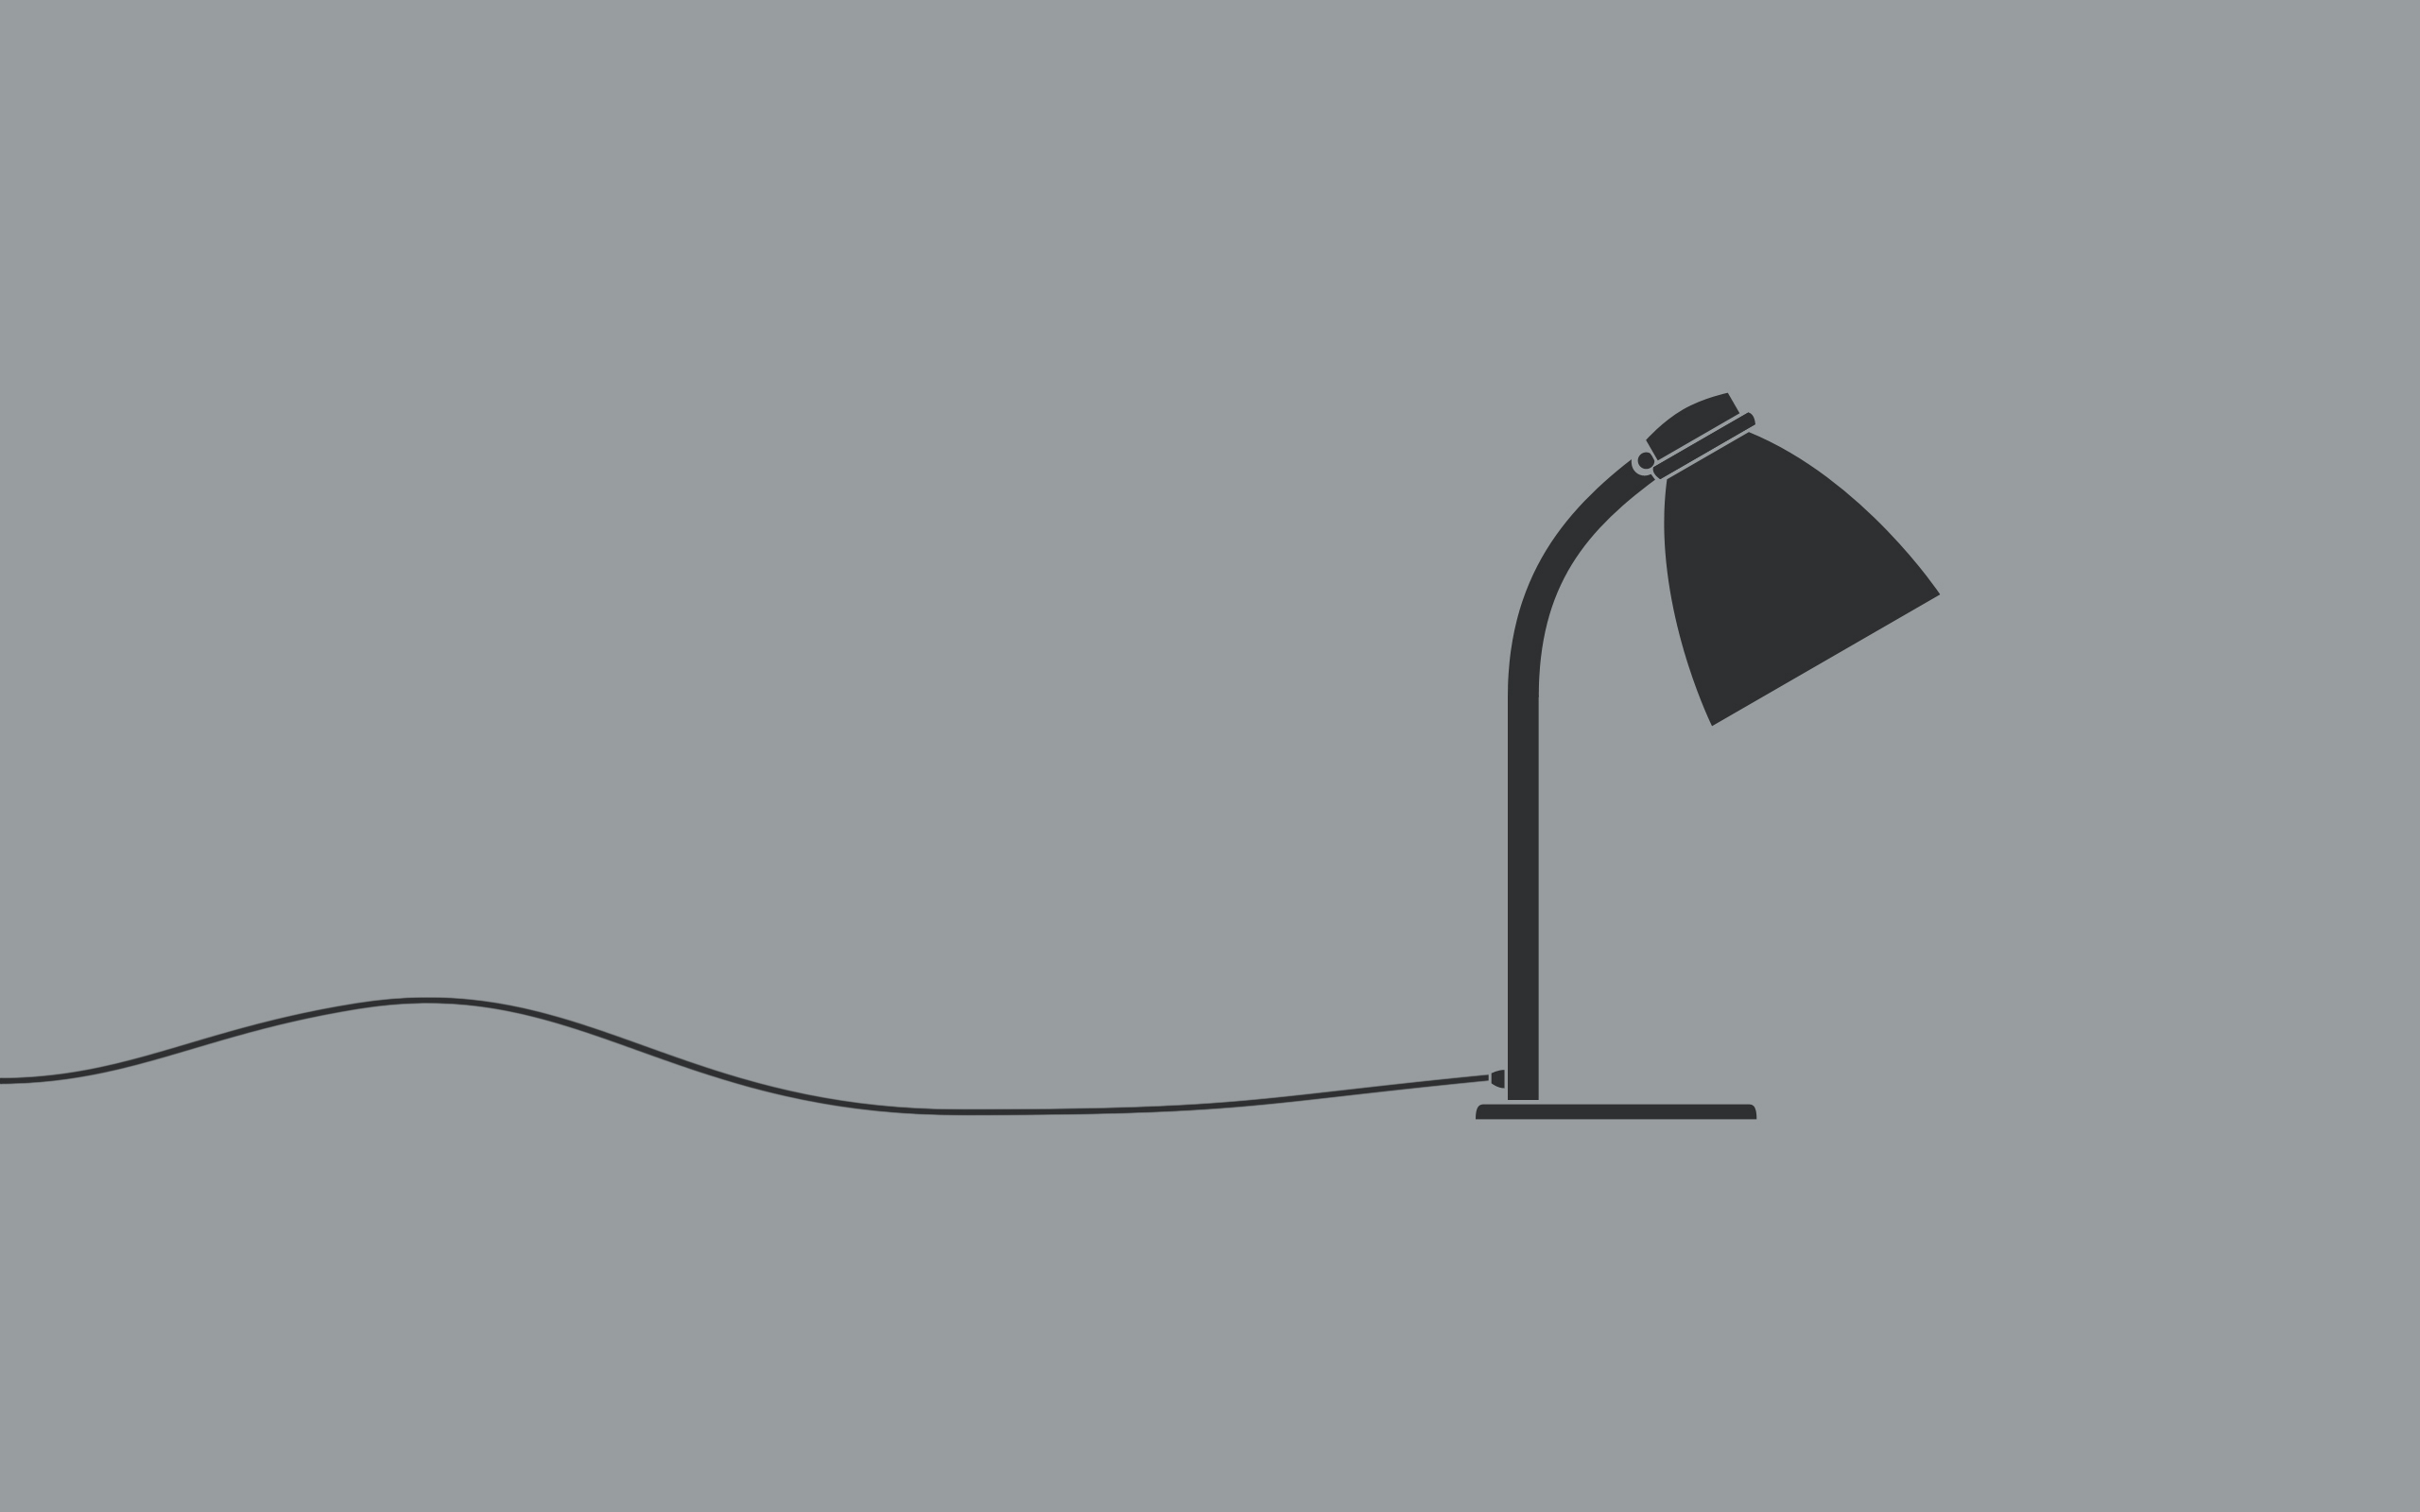 Фон рабочего стола где видно настольная лампа, шнур, серый фон, минимализм, обои, reading lamps, cord, gray background, minimalism, wallpaper